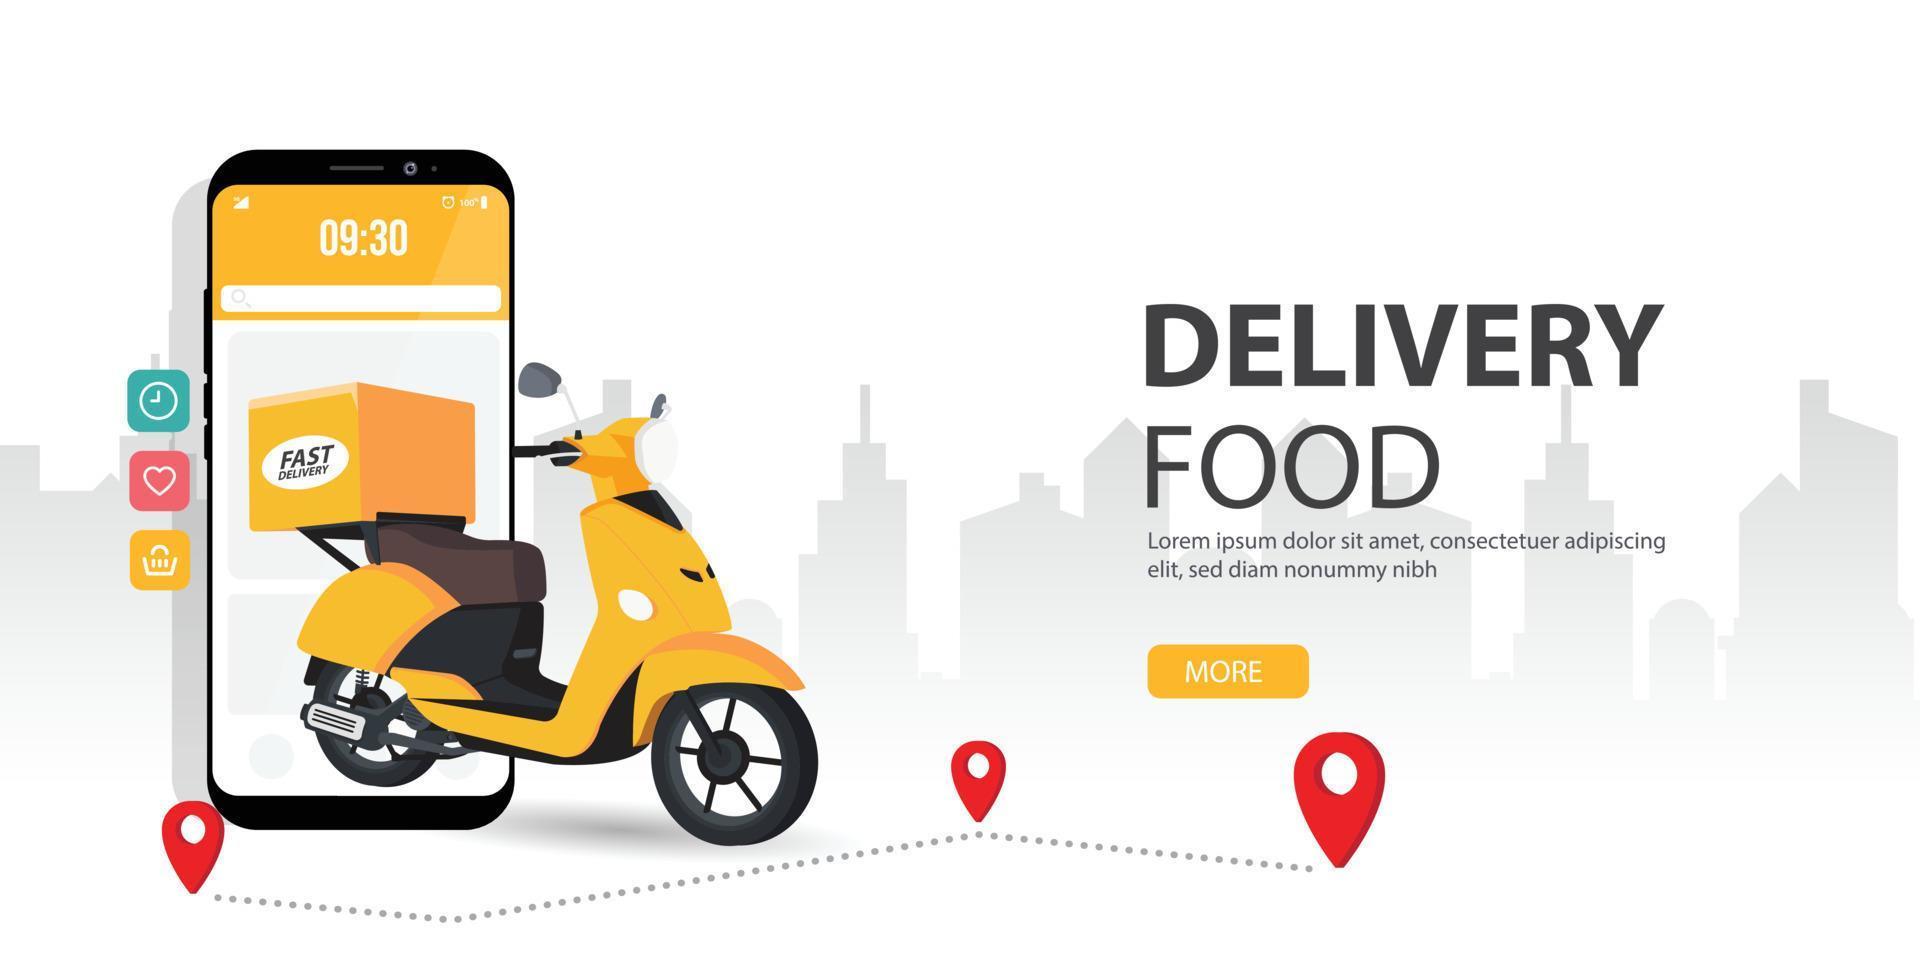 ordinazione di cibo online. illustrazione del concetto di vettore dello schermo dello smartphone mobile con corriere di consegna con cibo. rappresenta un concetto di ordinazione alimentare online.